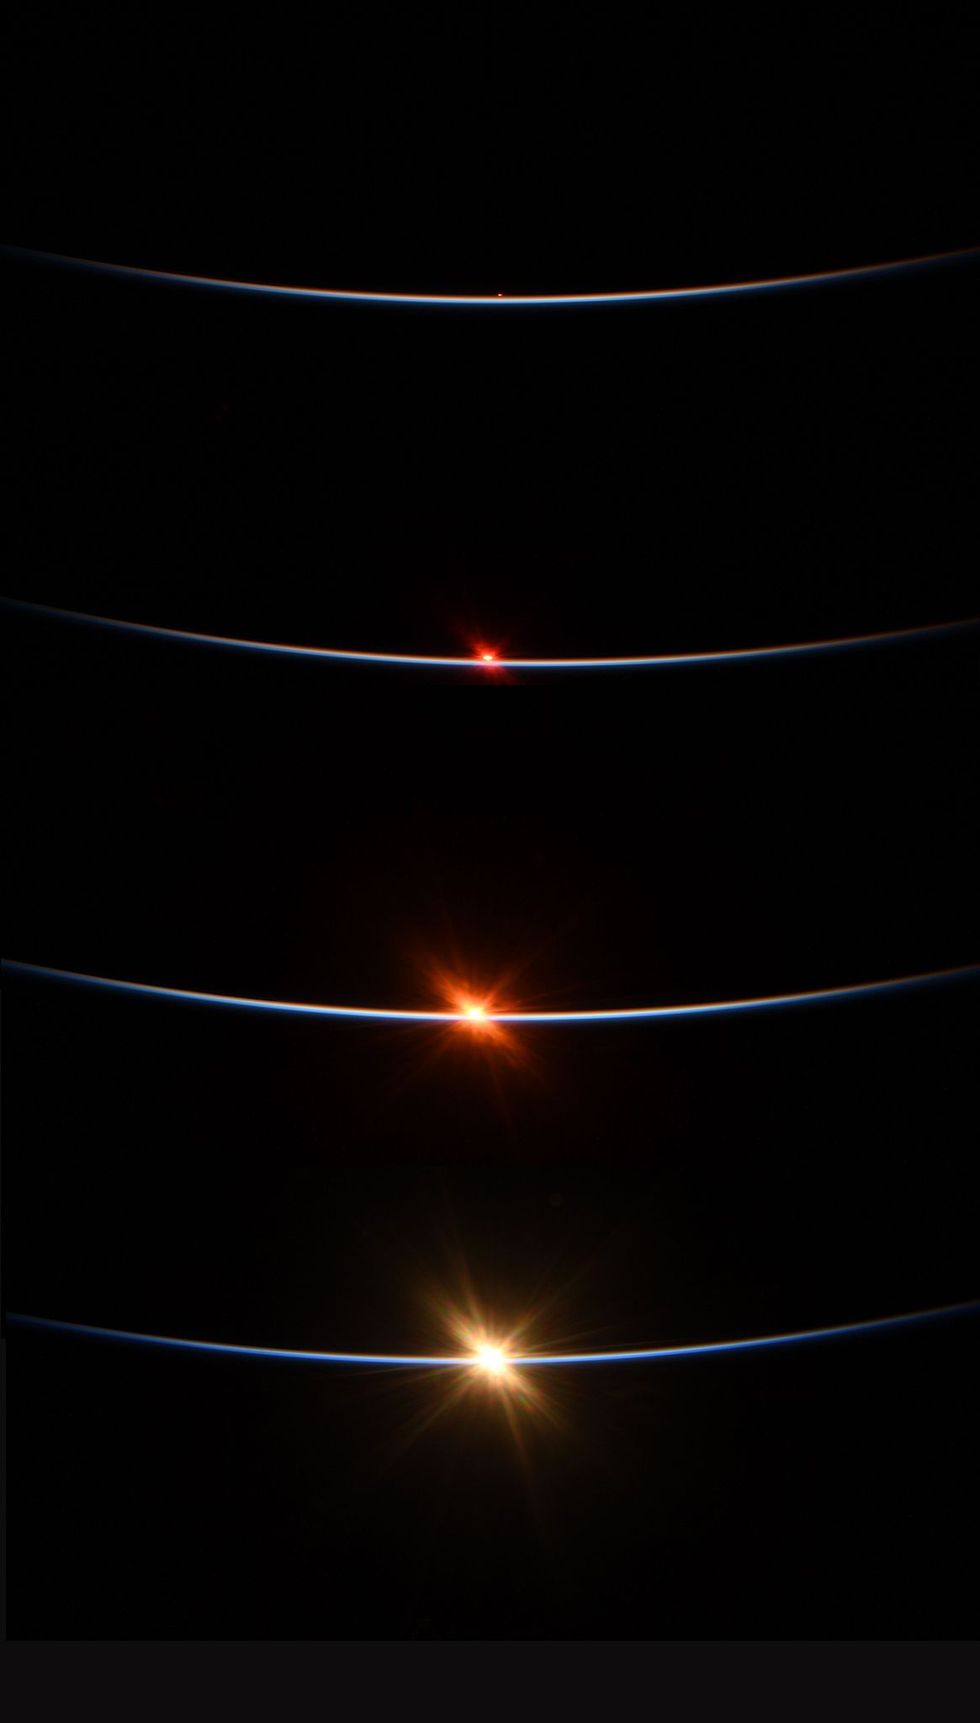 Behnken fotografeerde op 27 juli de zonsopgang gezien vanuit de ISS in deze serie van vier fotos Het ruimtestation doet ongeveer negentig minuten over zijn baan rond de aarde en komt daarbij afwisselend wel en niet in het zonlicht